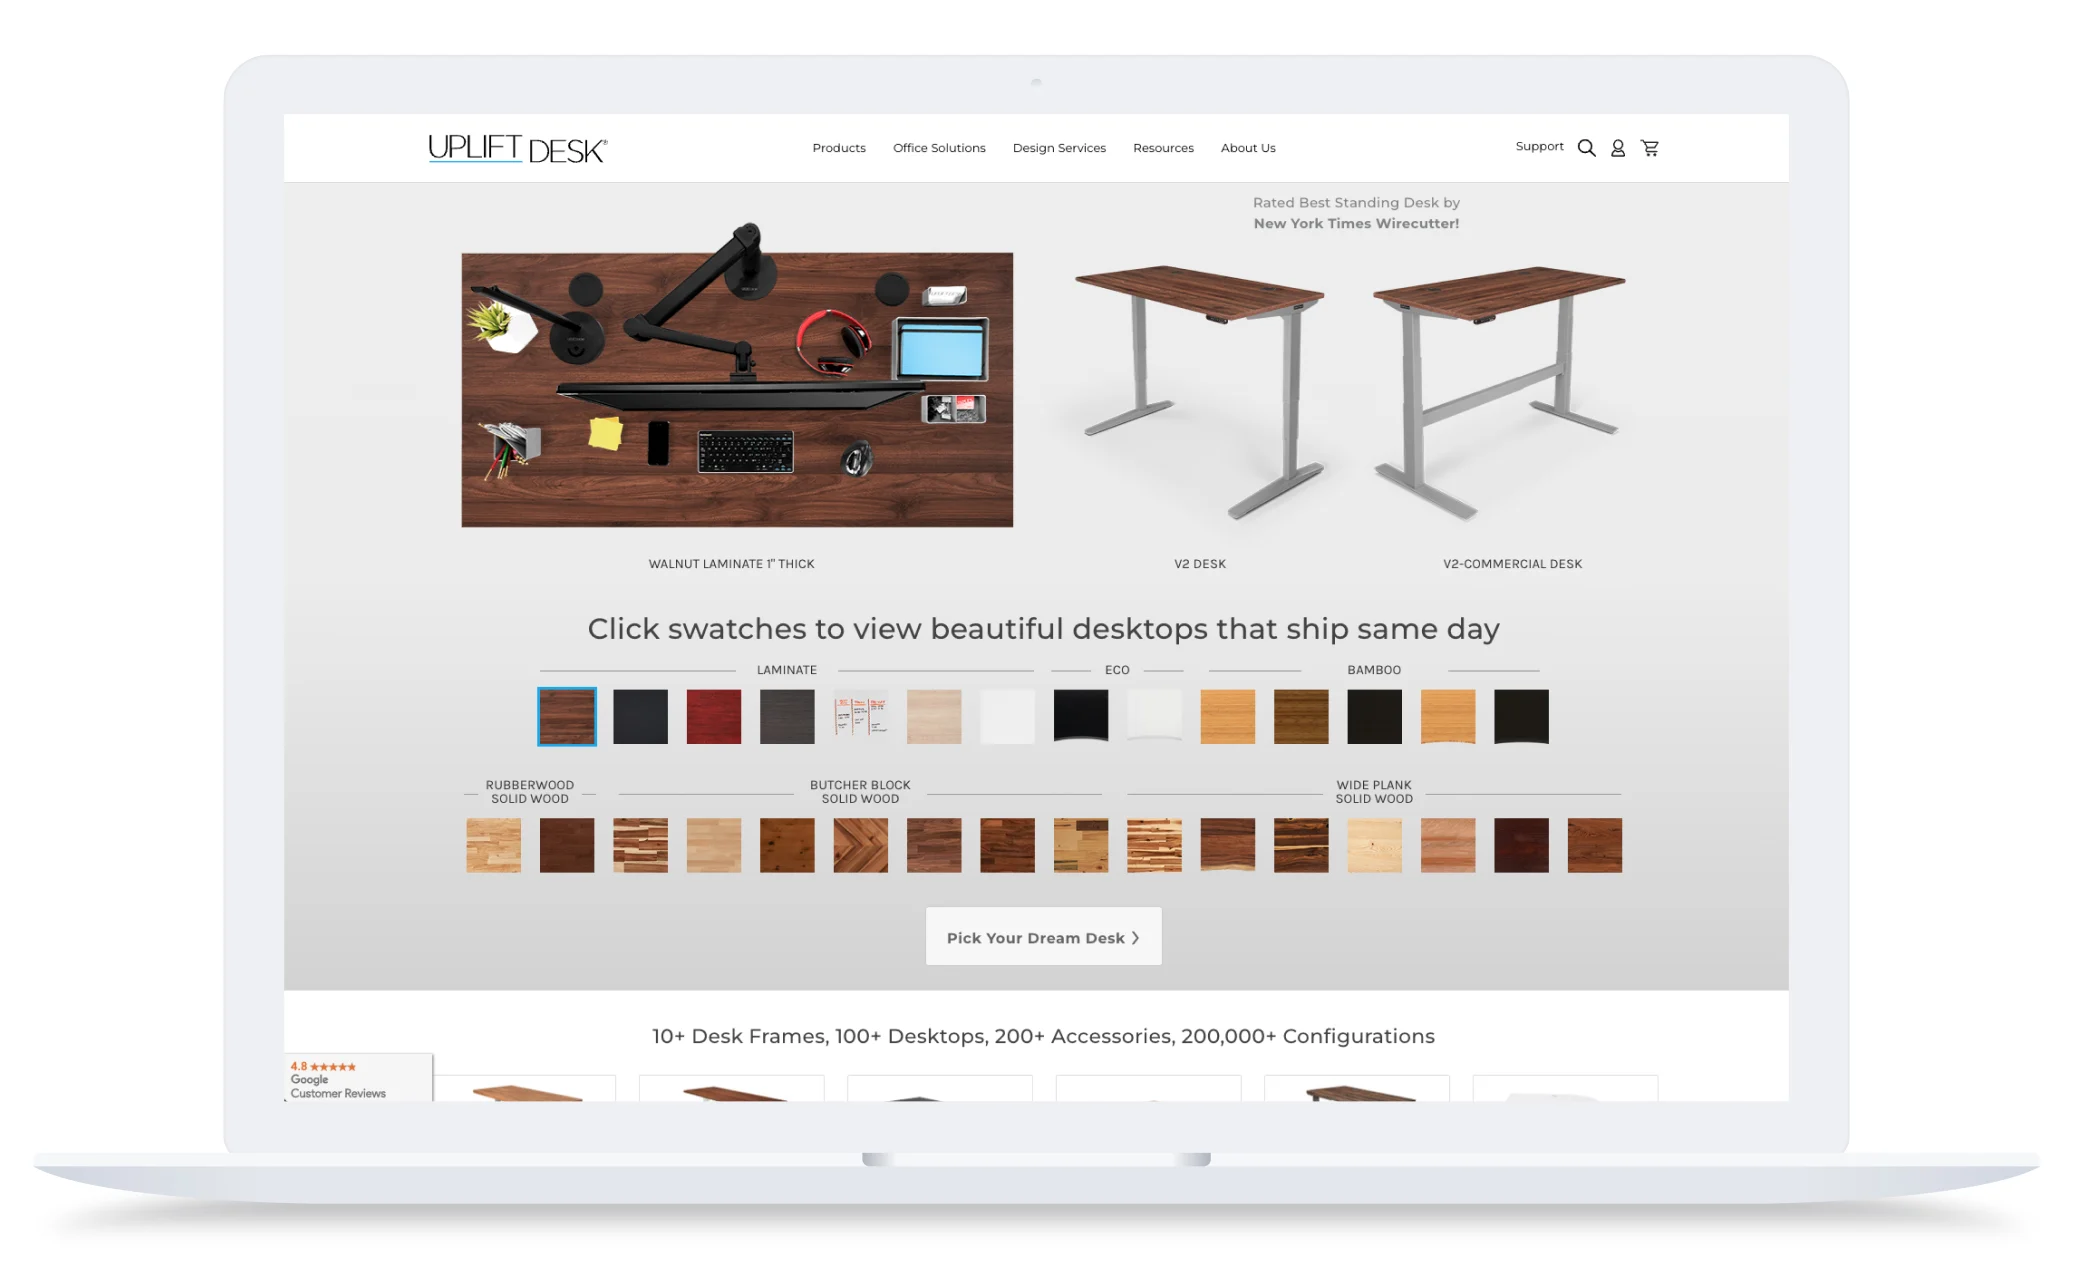 UPLIFT Desk on X: We offer custom solutions. The UPLIFT V2 L